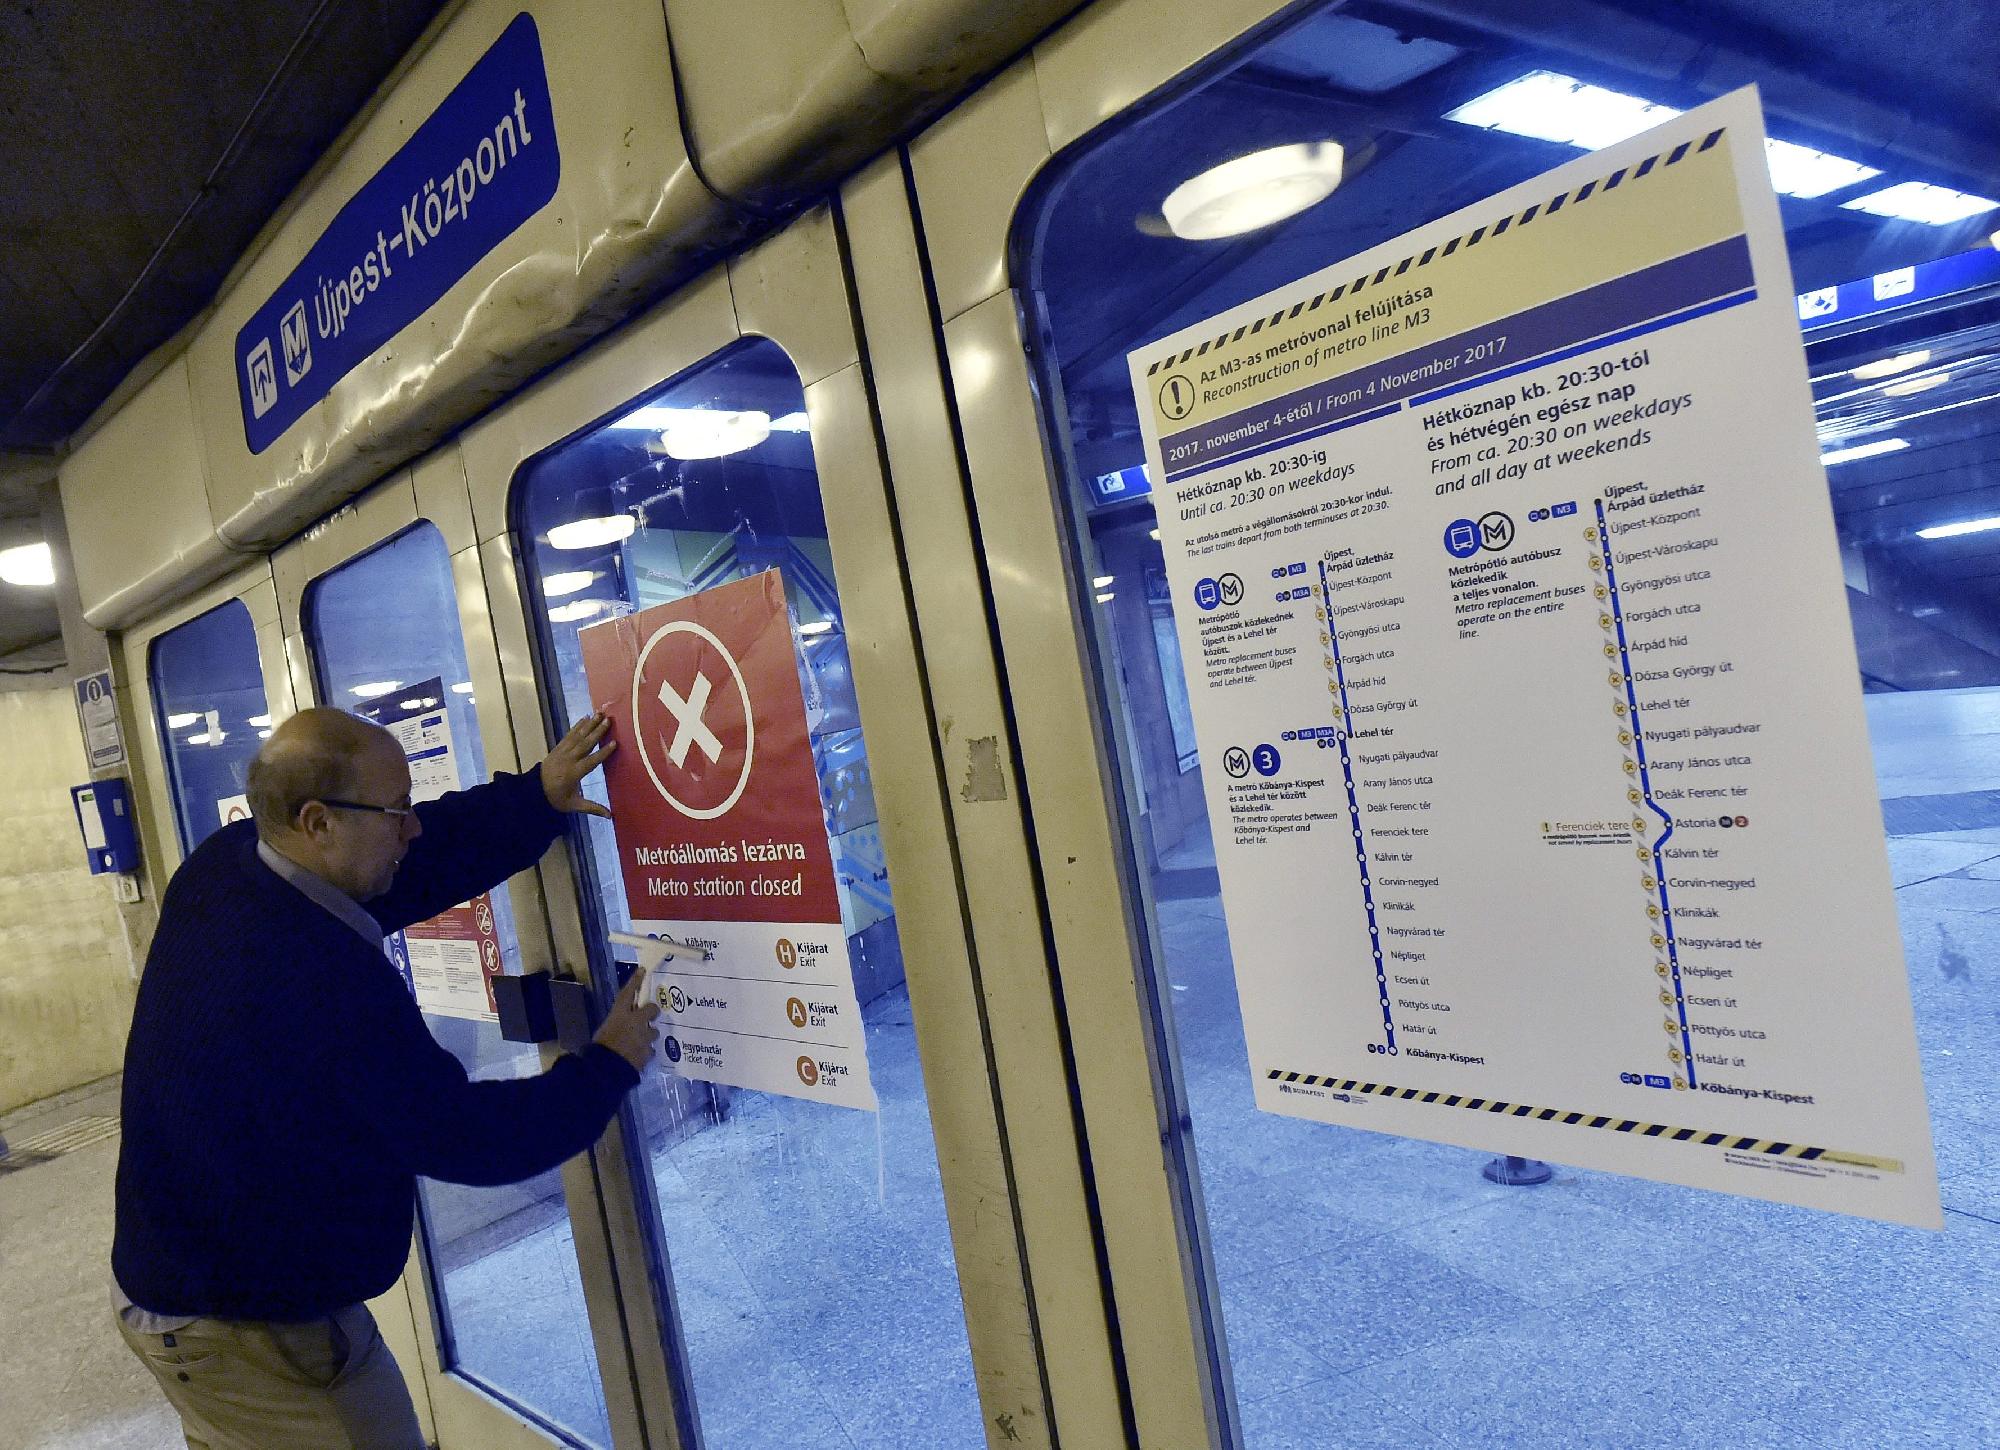 Késelés történt a hármas metró újpesti építési területén